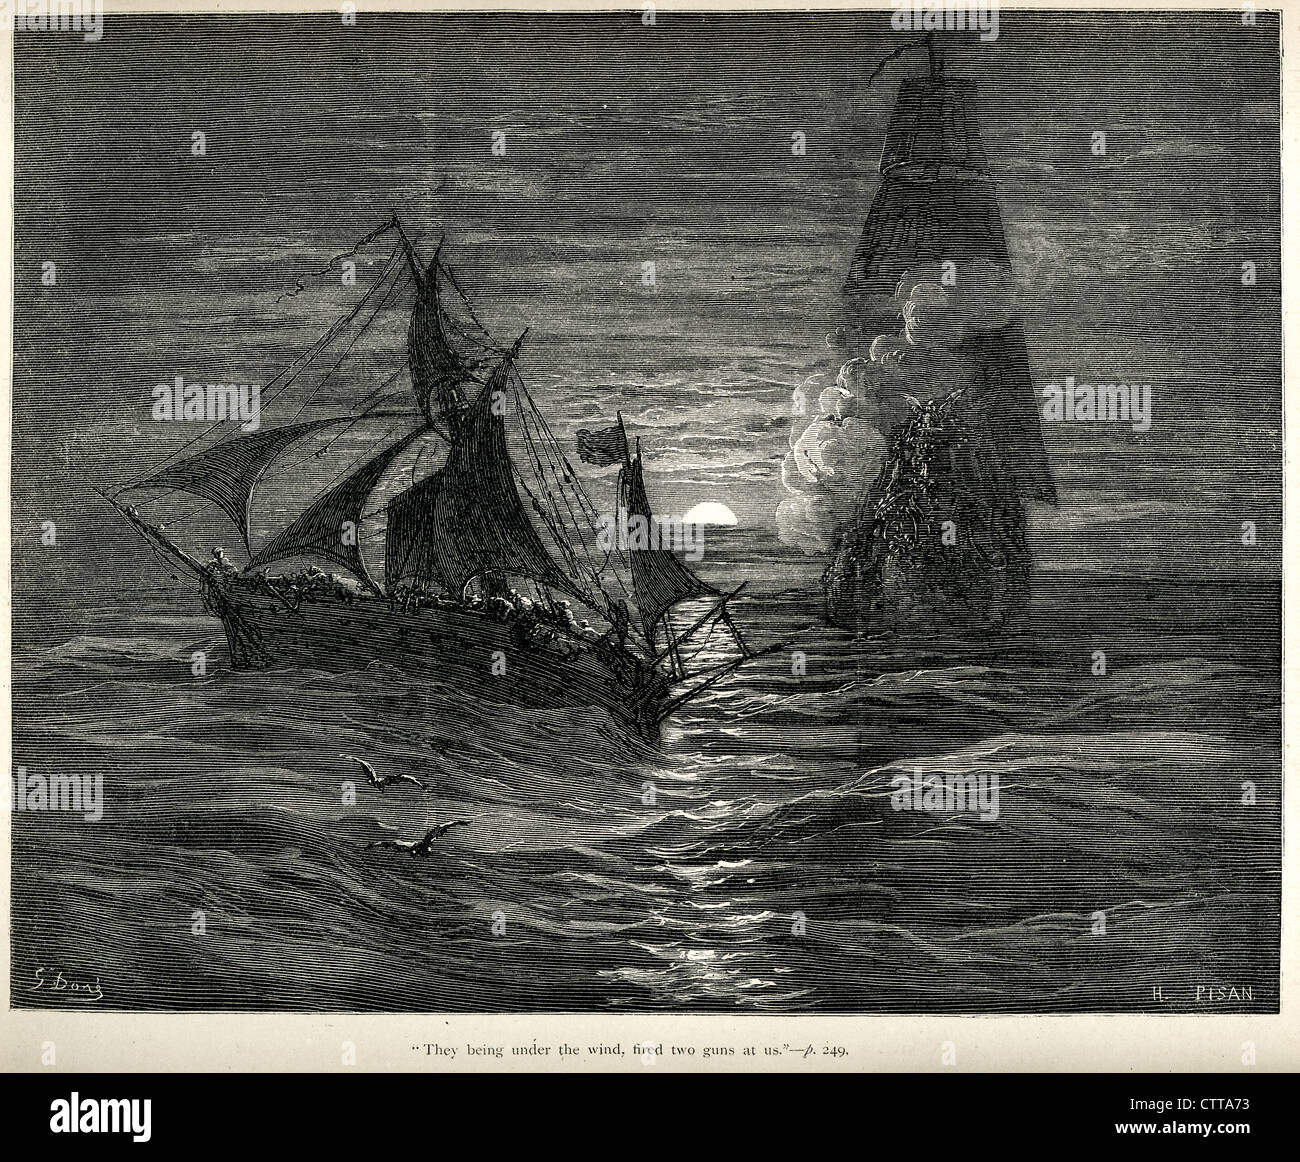 Sie unter den Wind feuerte zwei Pistolen auf uns. Illustration von Gustave Dore von Don Quijote. Stockfoto